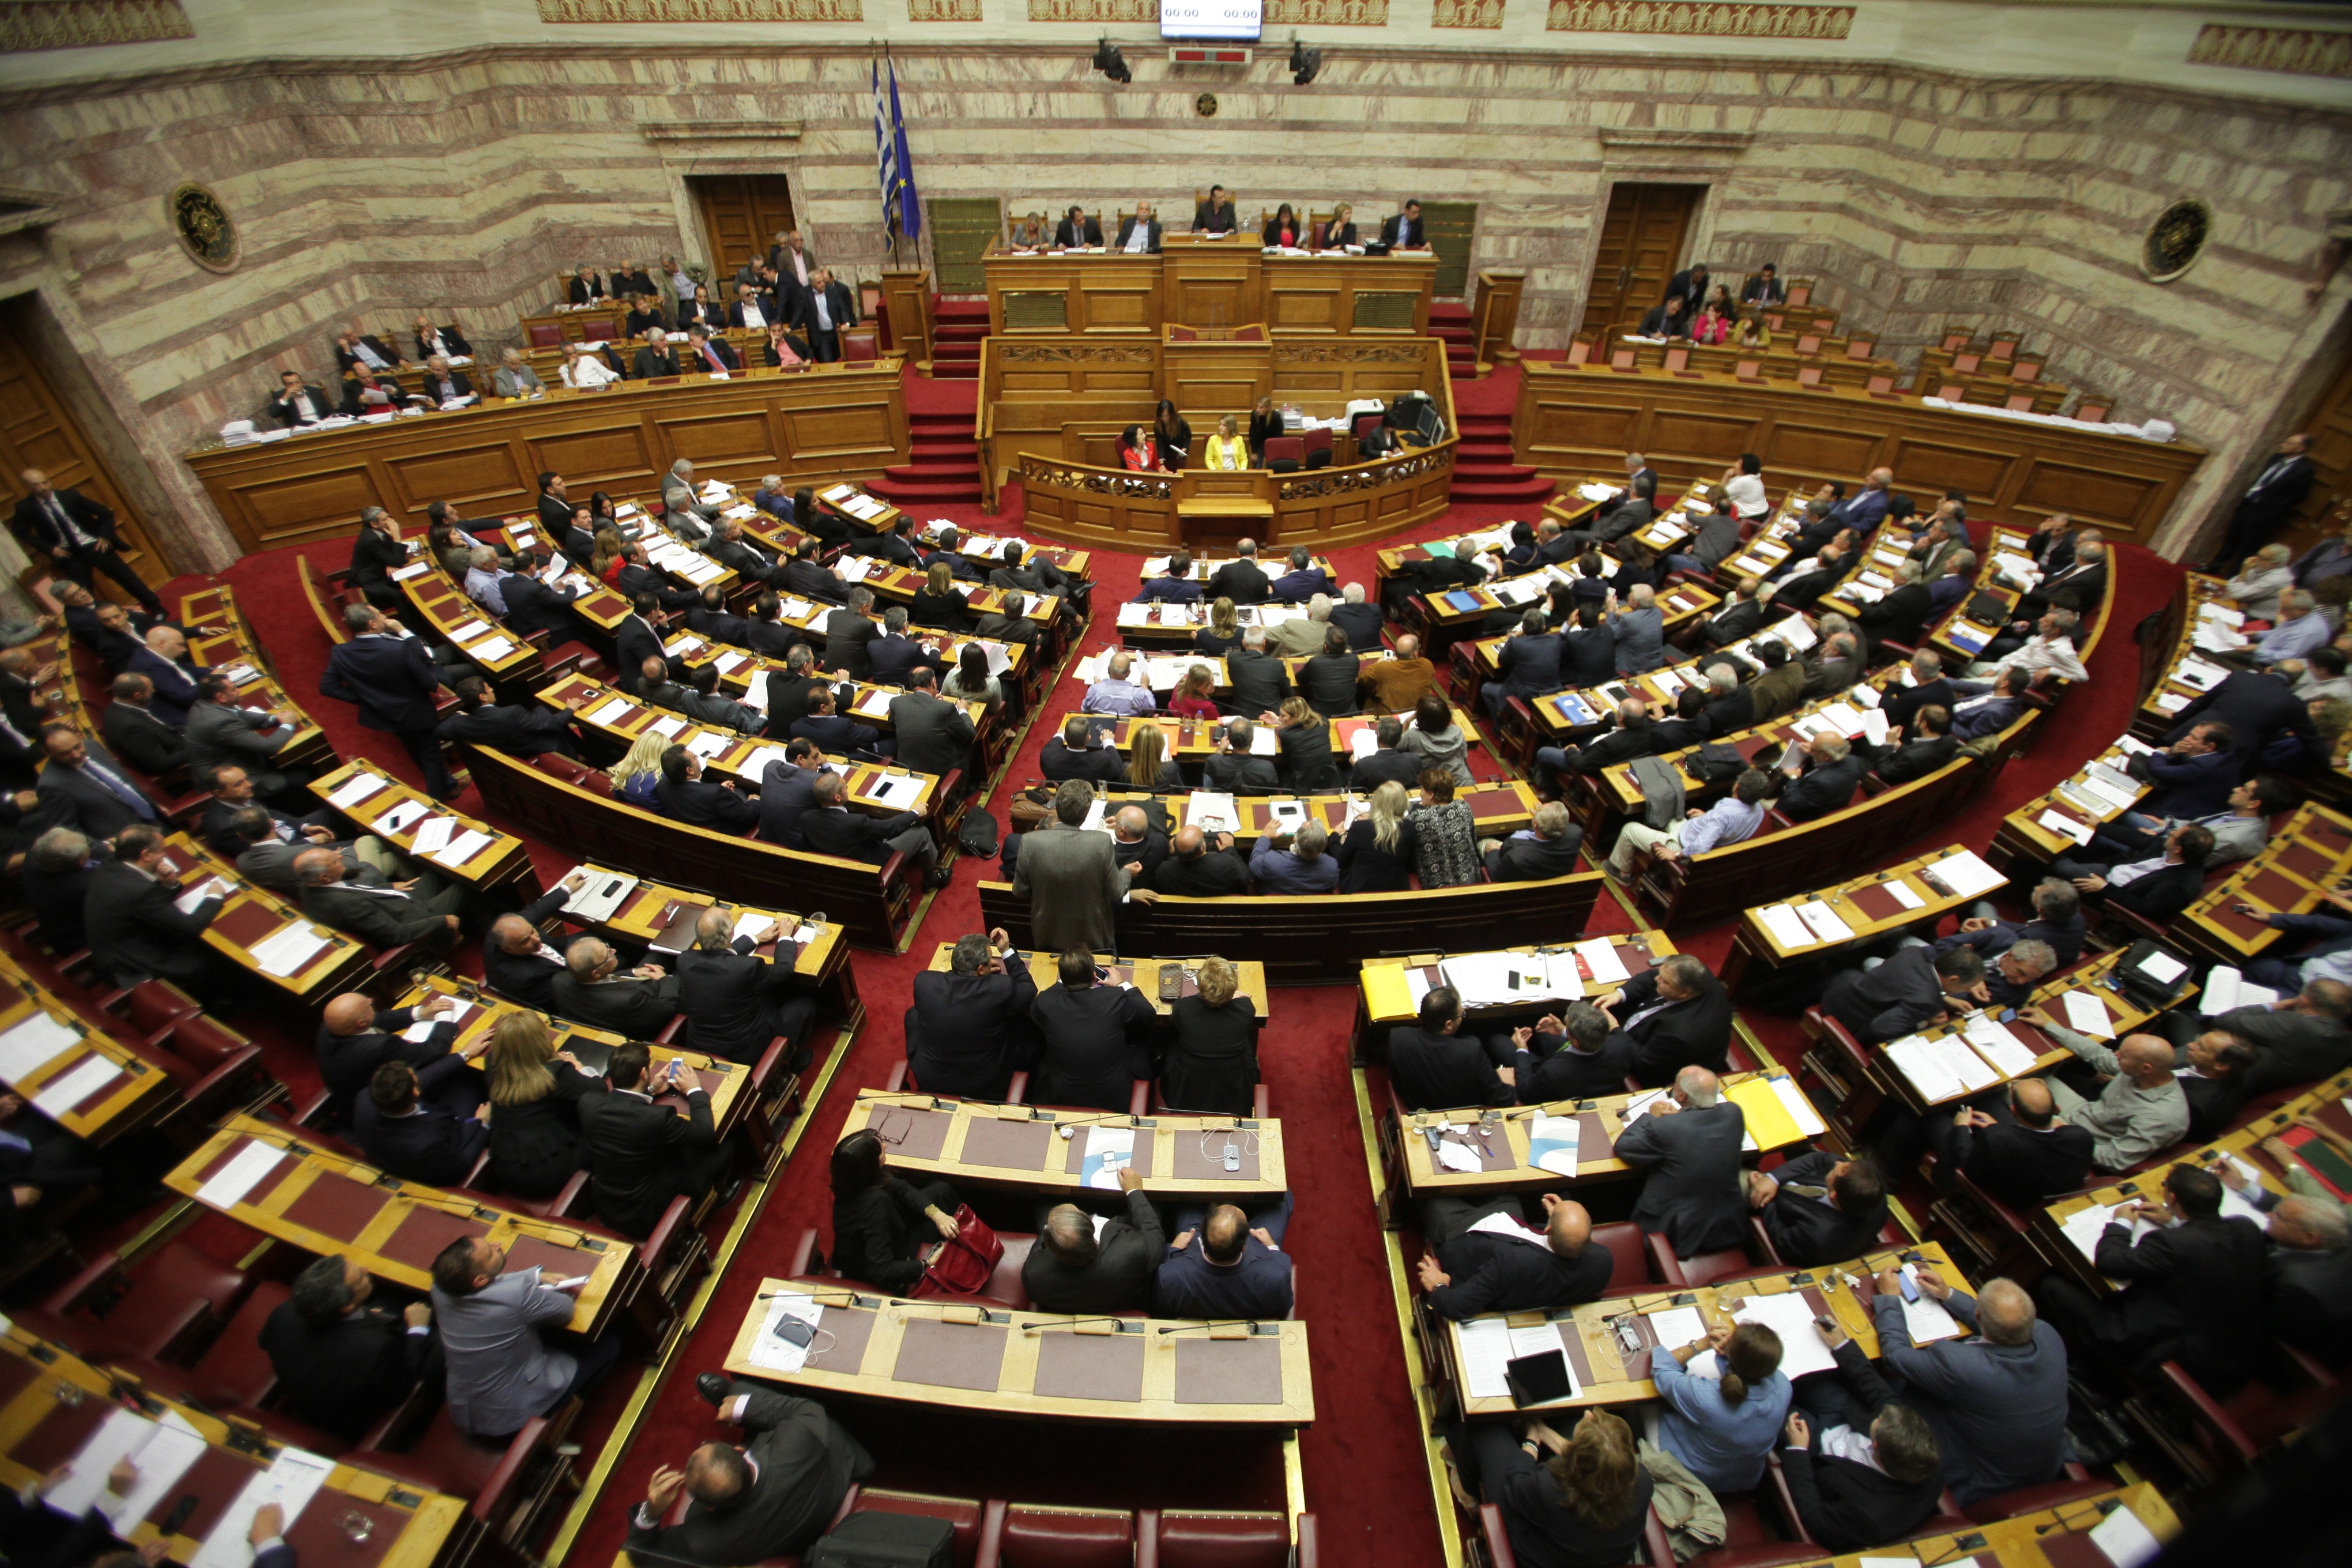 Με 153 η κυβερνητική πλειοψηφία. Διαγράφτηκαν Παναγούλης και Νικολόπουλος